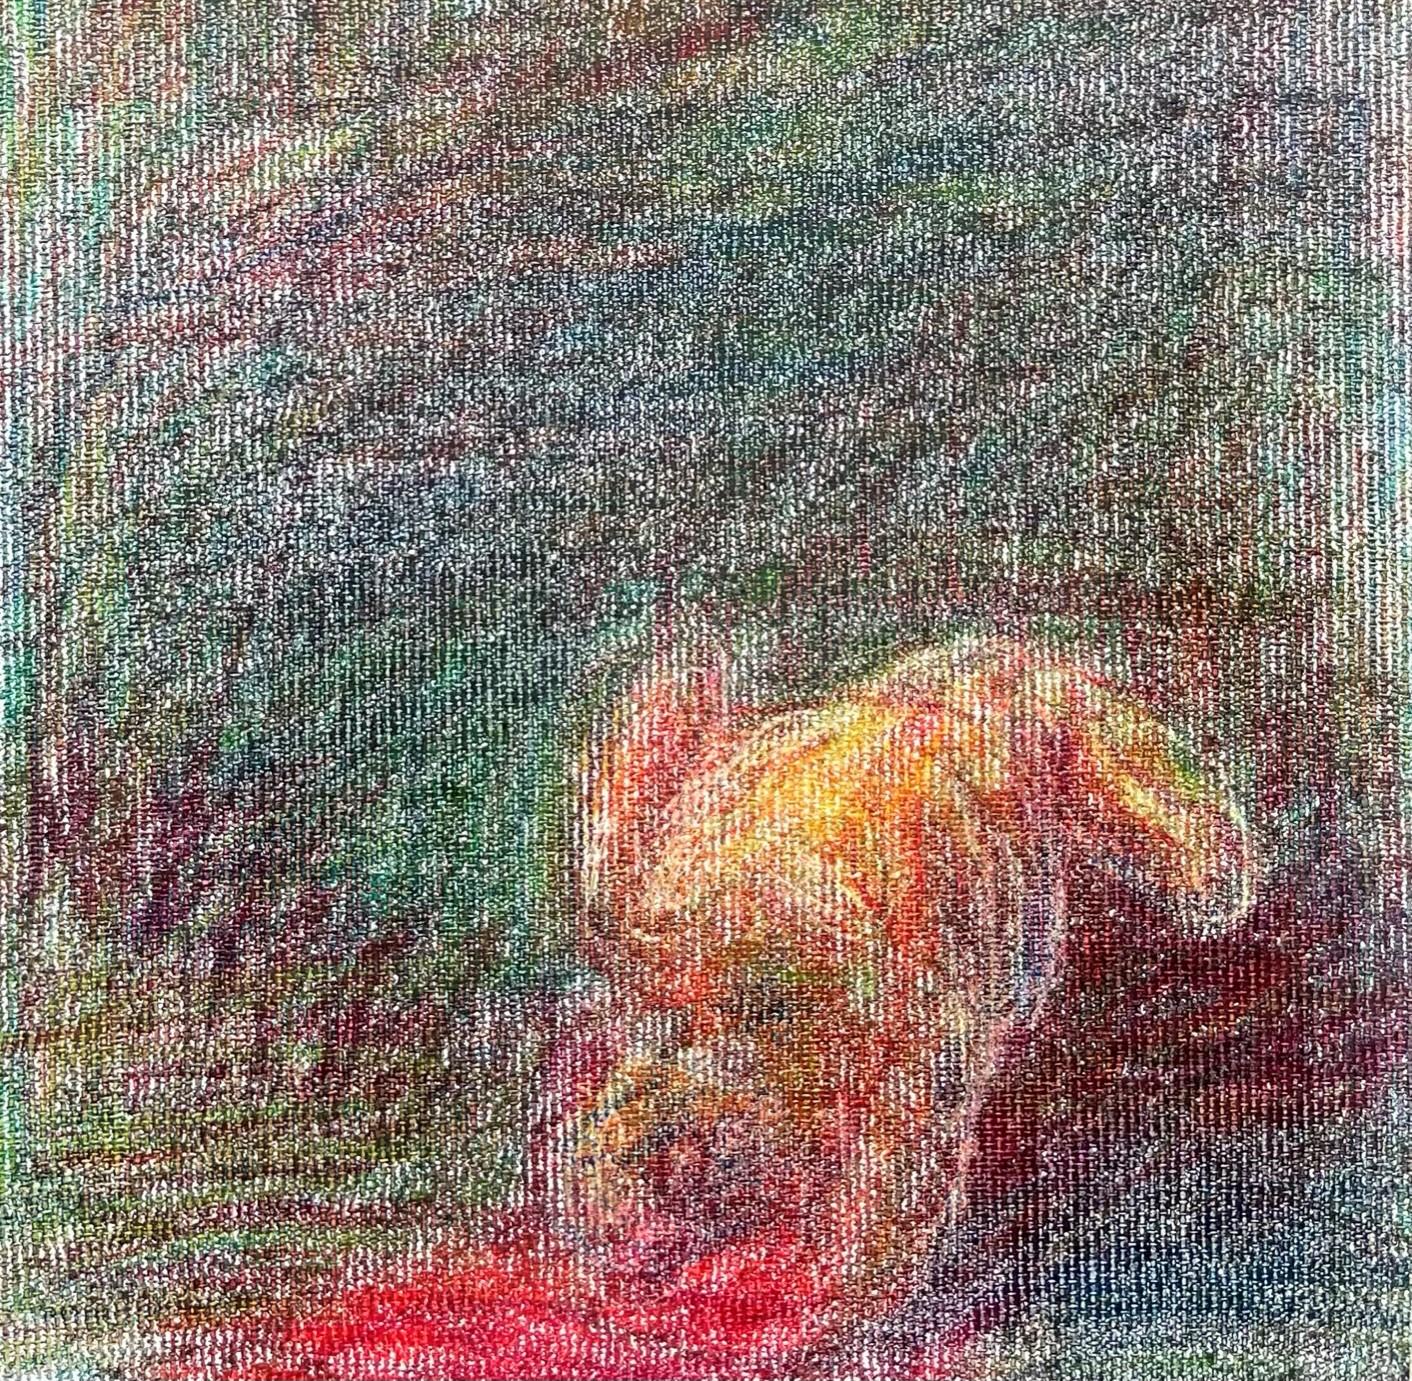 Body in the Field #10 – Zeitgenössisch, rot, gelb, grün, 21. Jahrhundert (Expressionismus), Art, von Zsolt Berszán